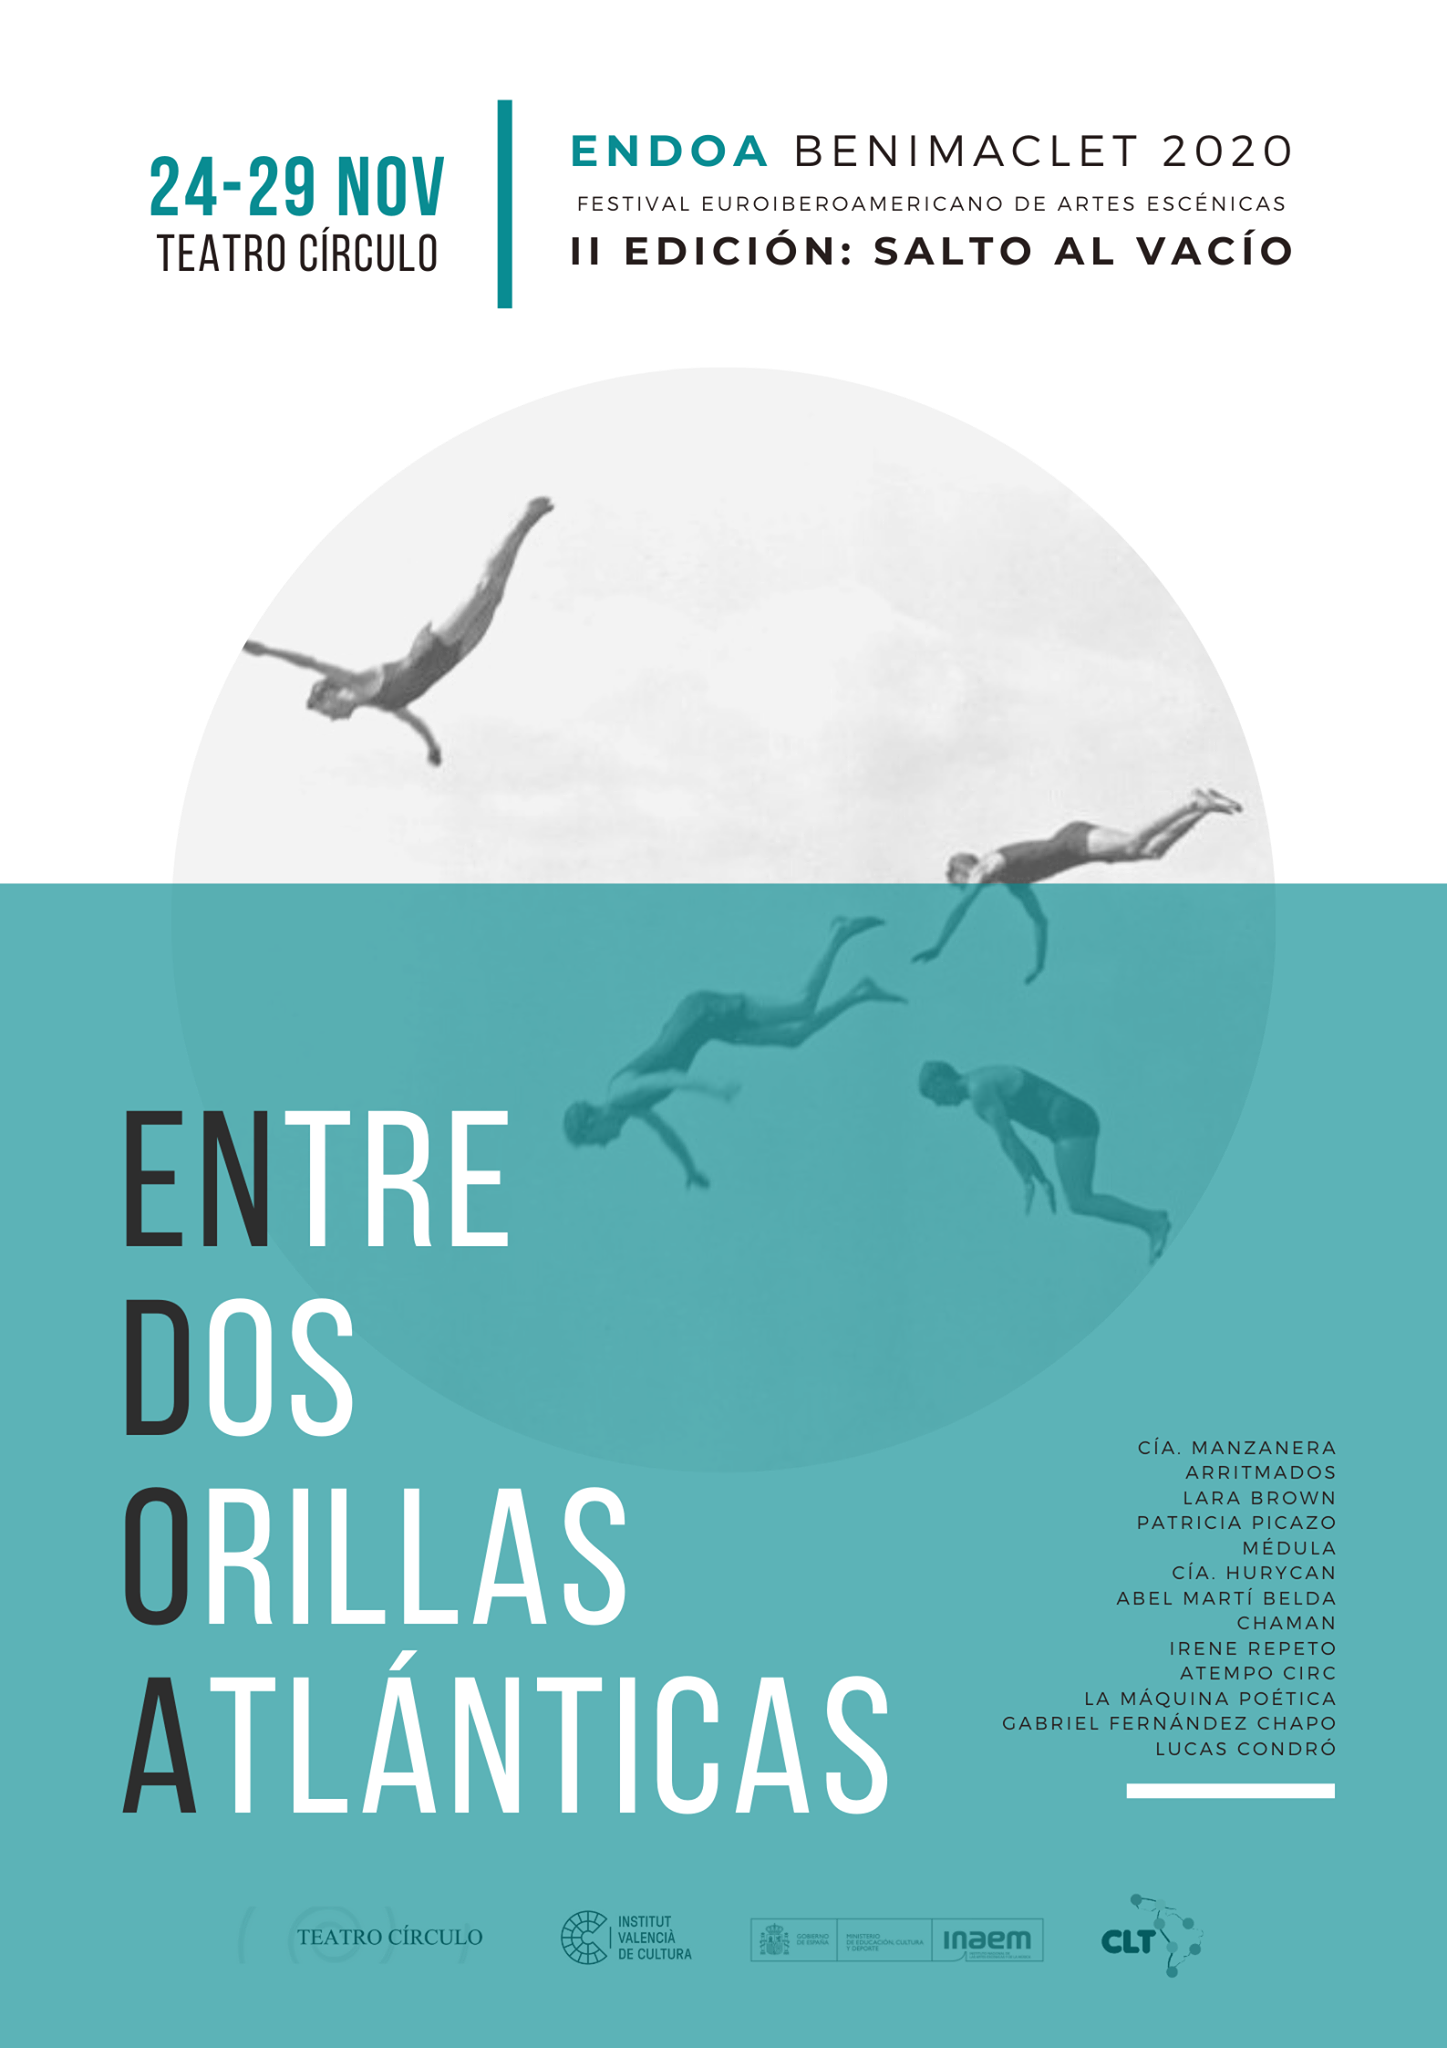 Teatro Círculo presenta la II Edición del Festival Euroiberoamericano de Artes Escénicas ENDOA